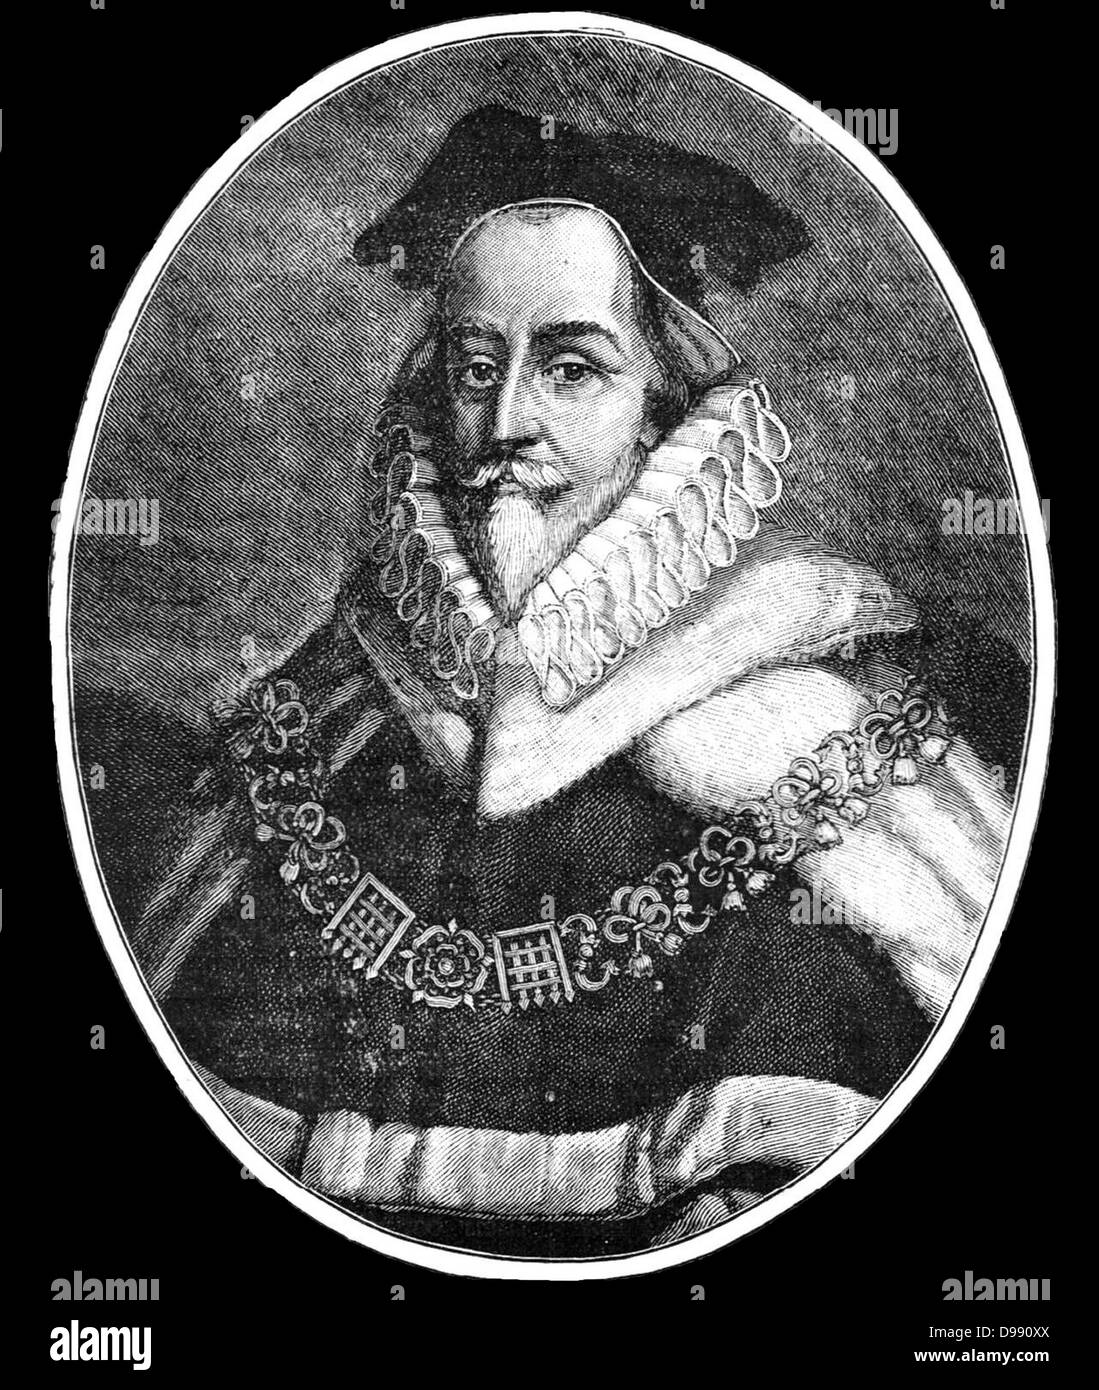 Sir Edward Coke (pronunciato "cucinare") (1 febbraio 1552 - 3 settembre 1634), è stato un inizio di coloniale inglese imprenditore e giurista Foto Stock